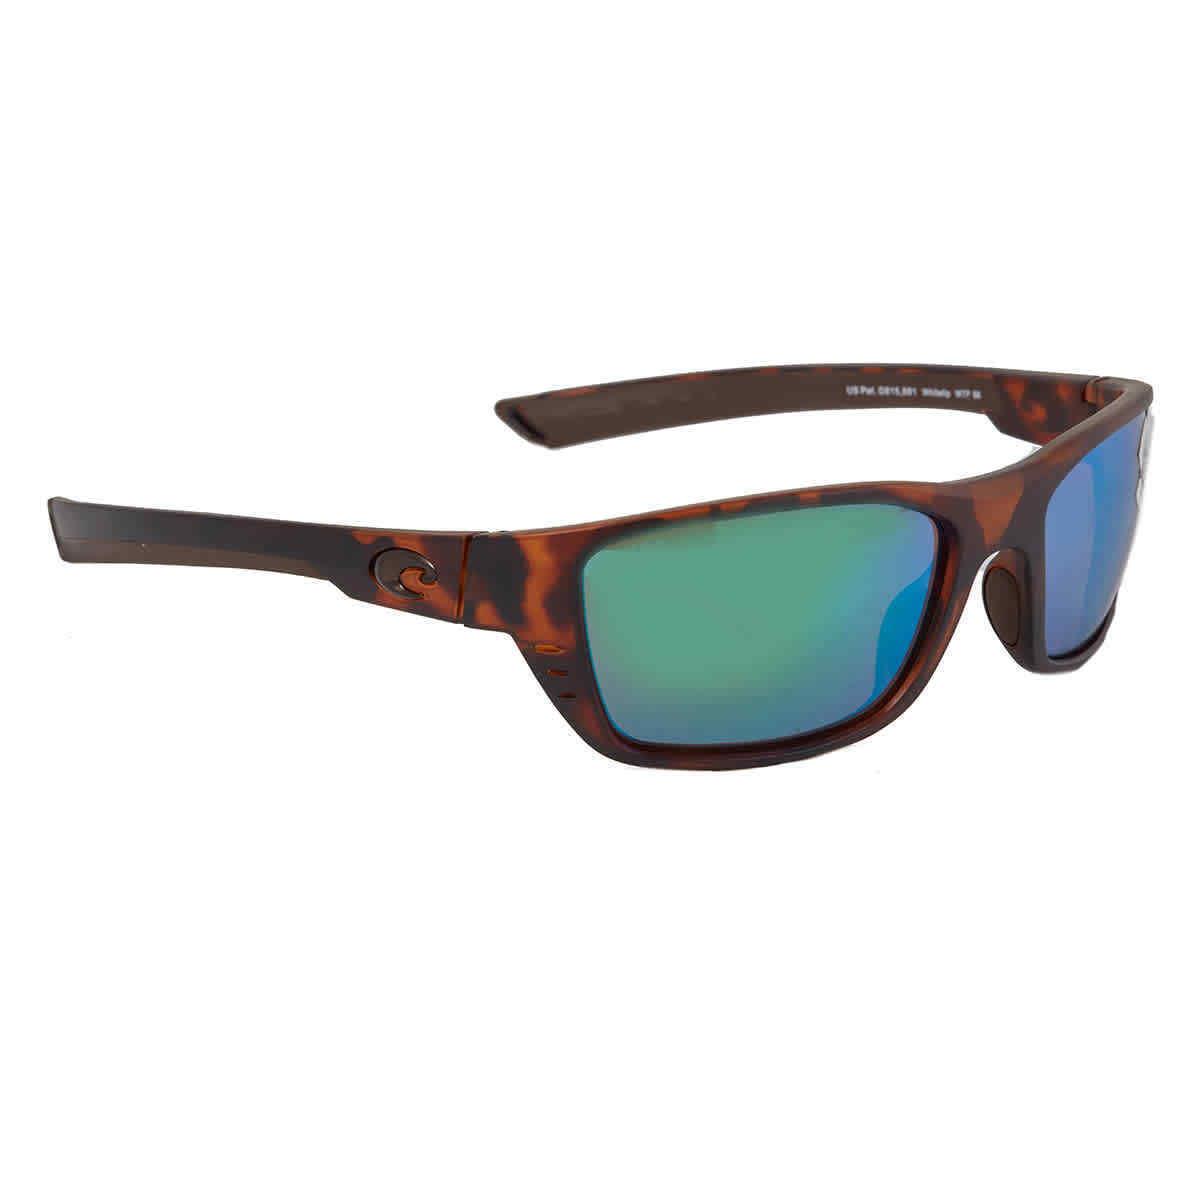 Costa Del Mar Retro Tortoise/green Mirror Whitetip Polarized 580G Sunglasses - Frame: Brown, Lens: Green